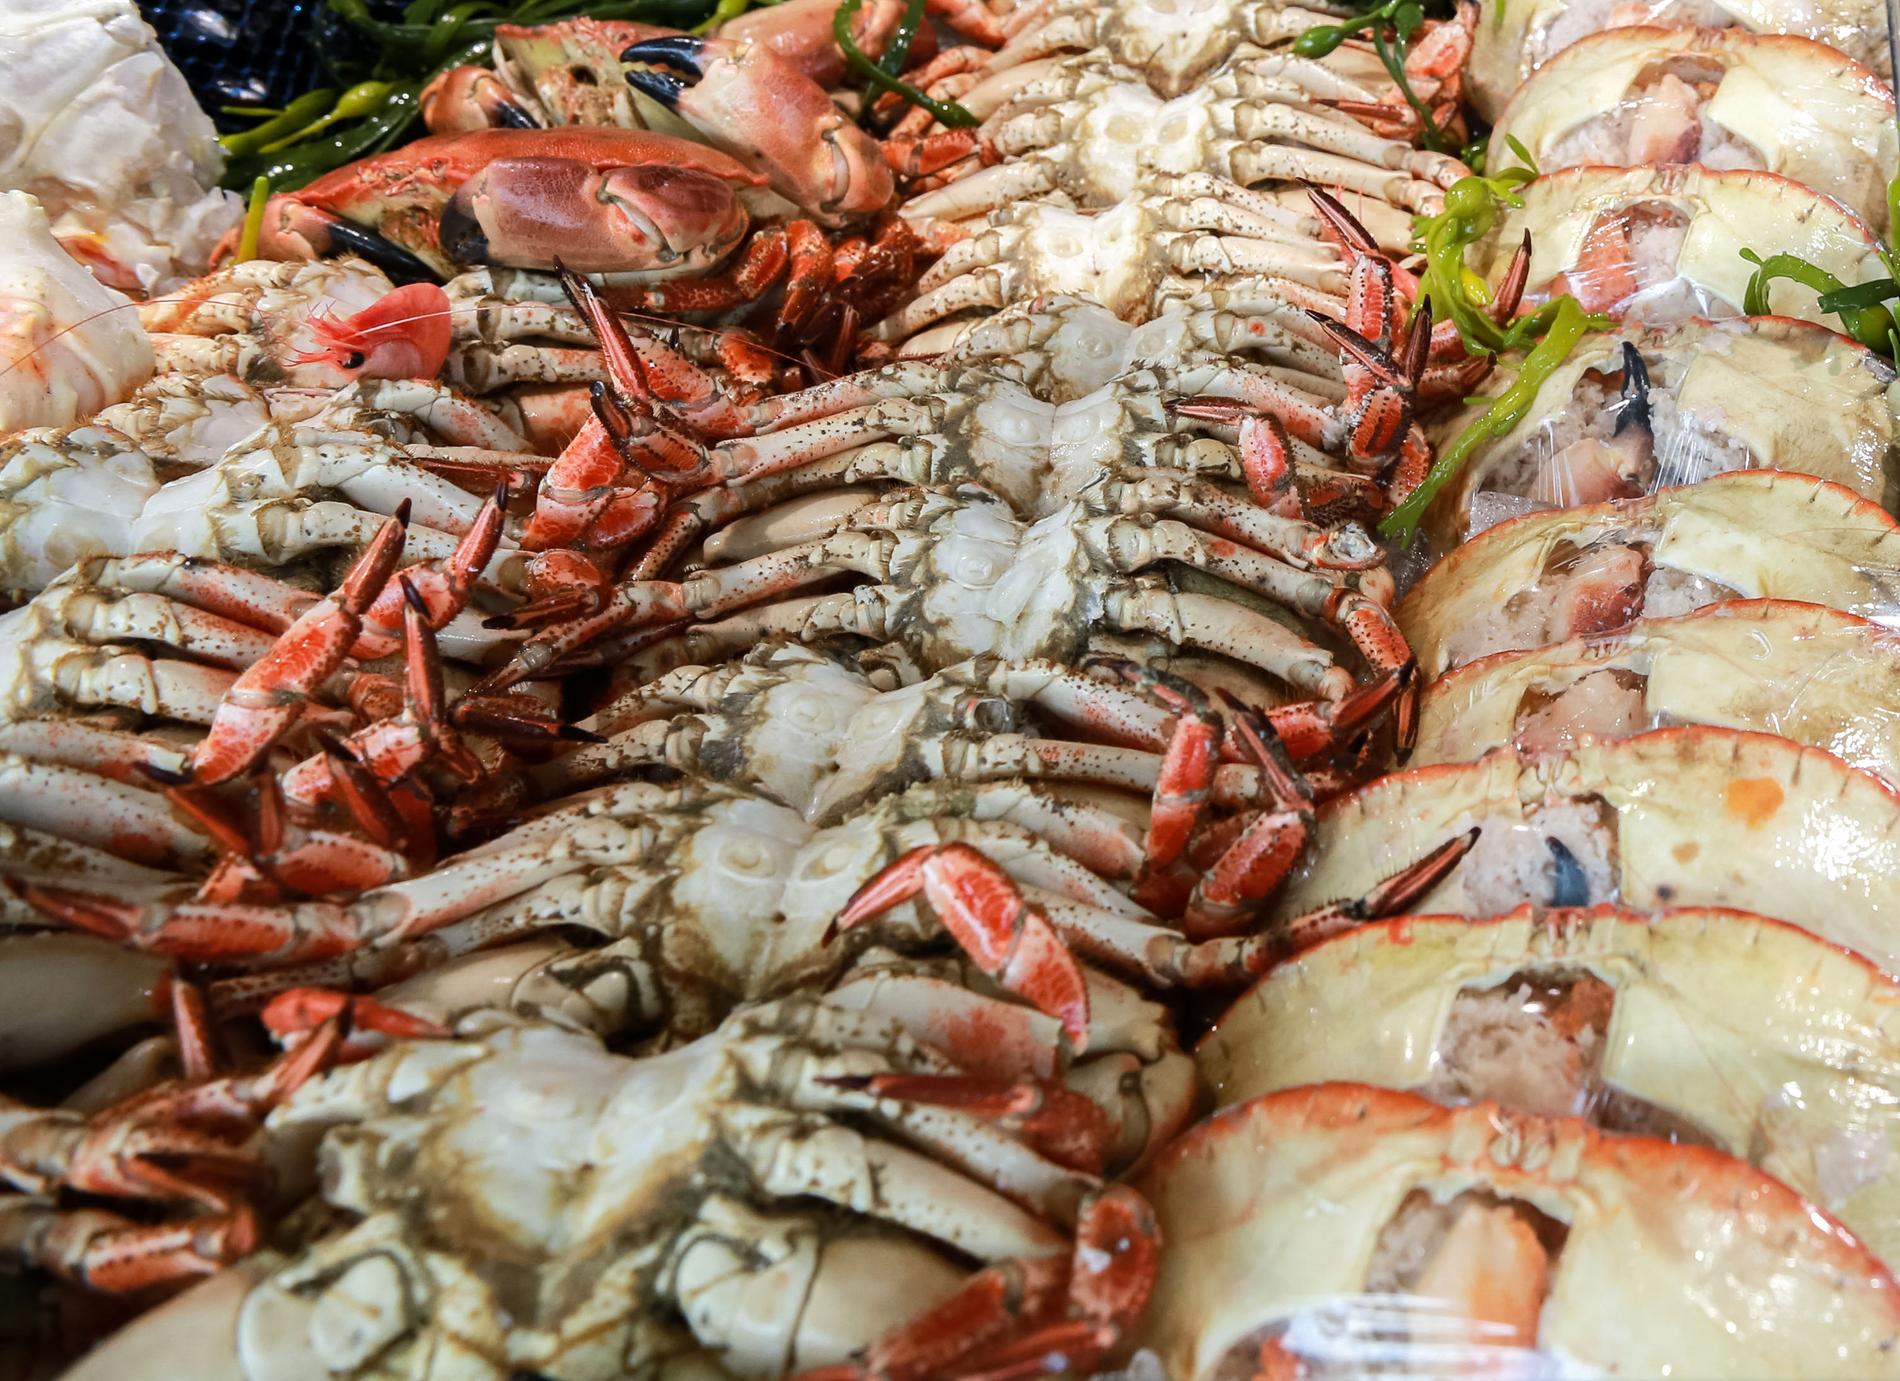 Krabborna på bilden har ingenting med kaoset på restaurangen i USA att göra.